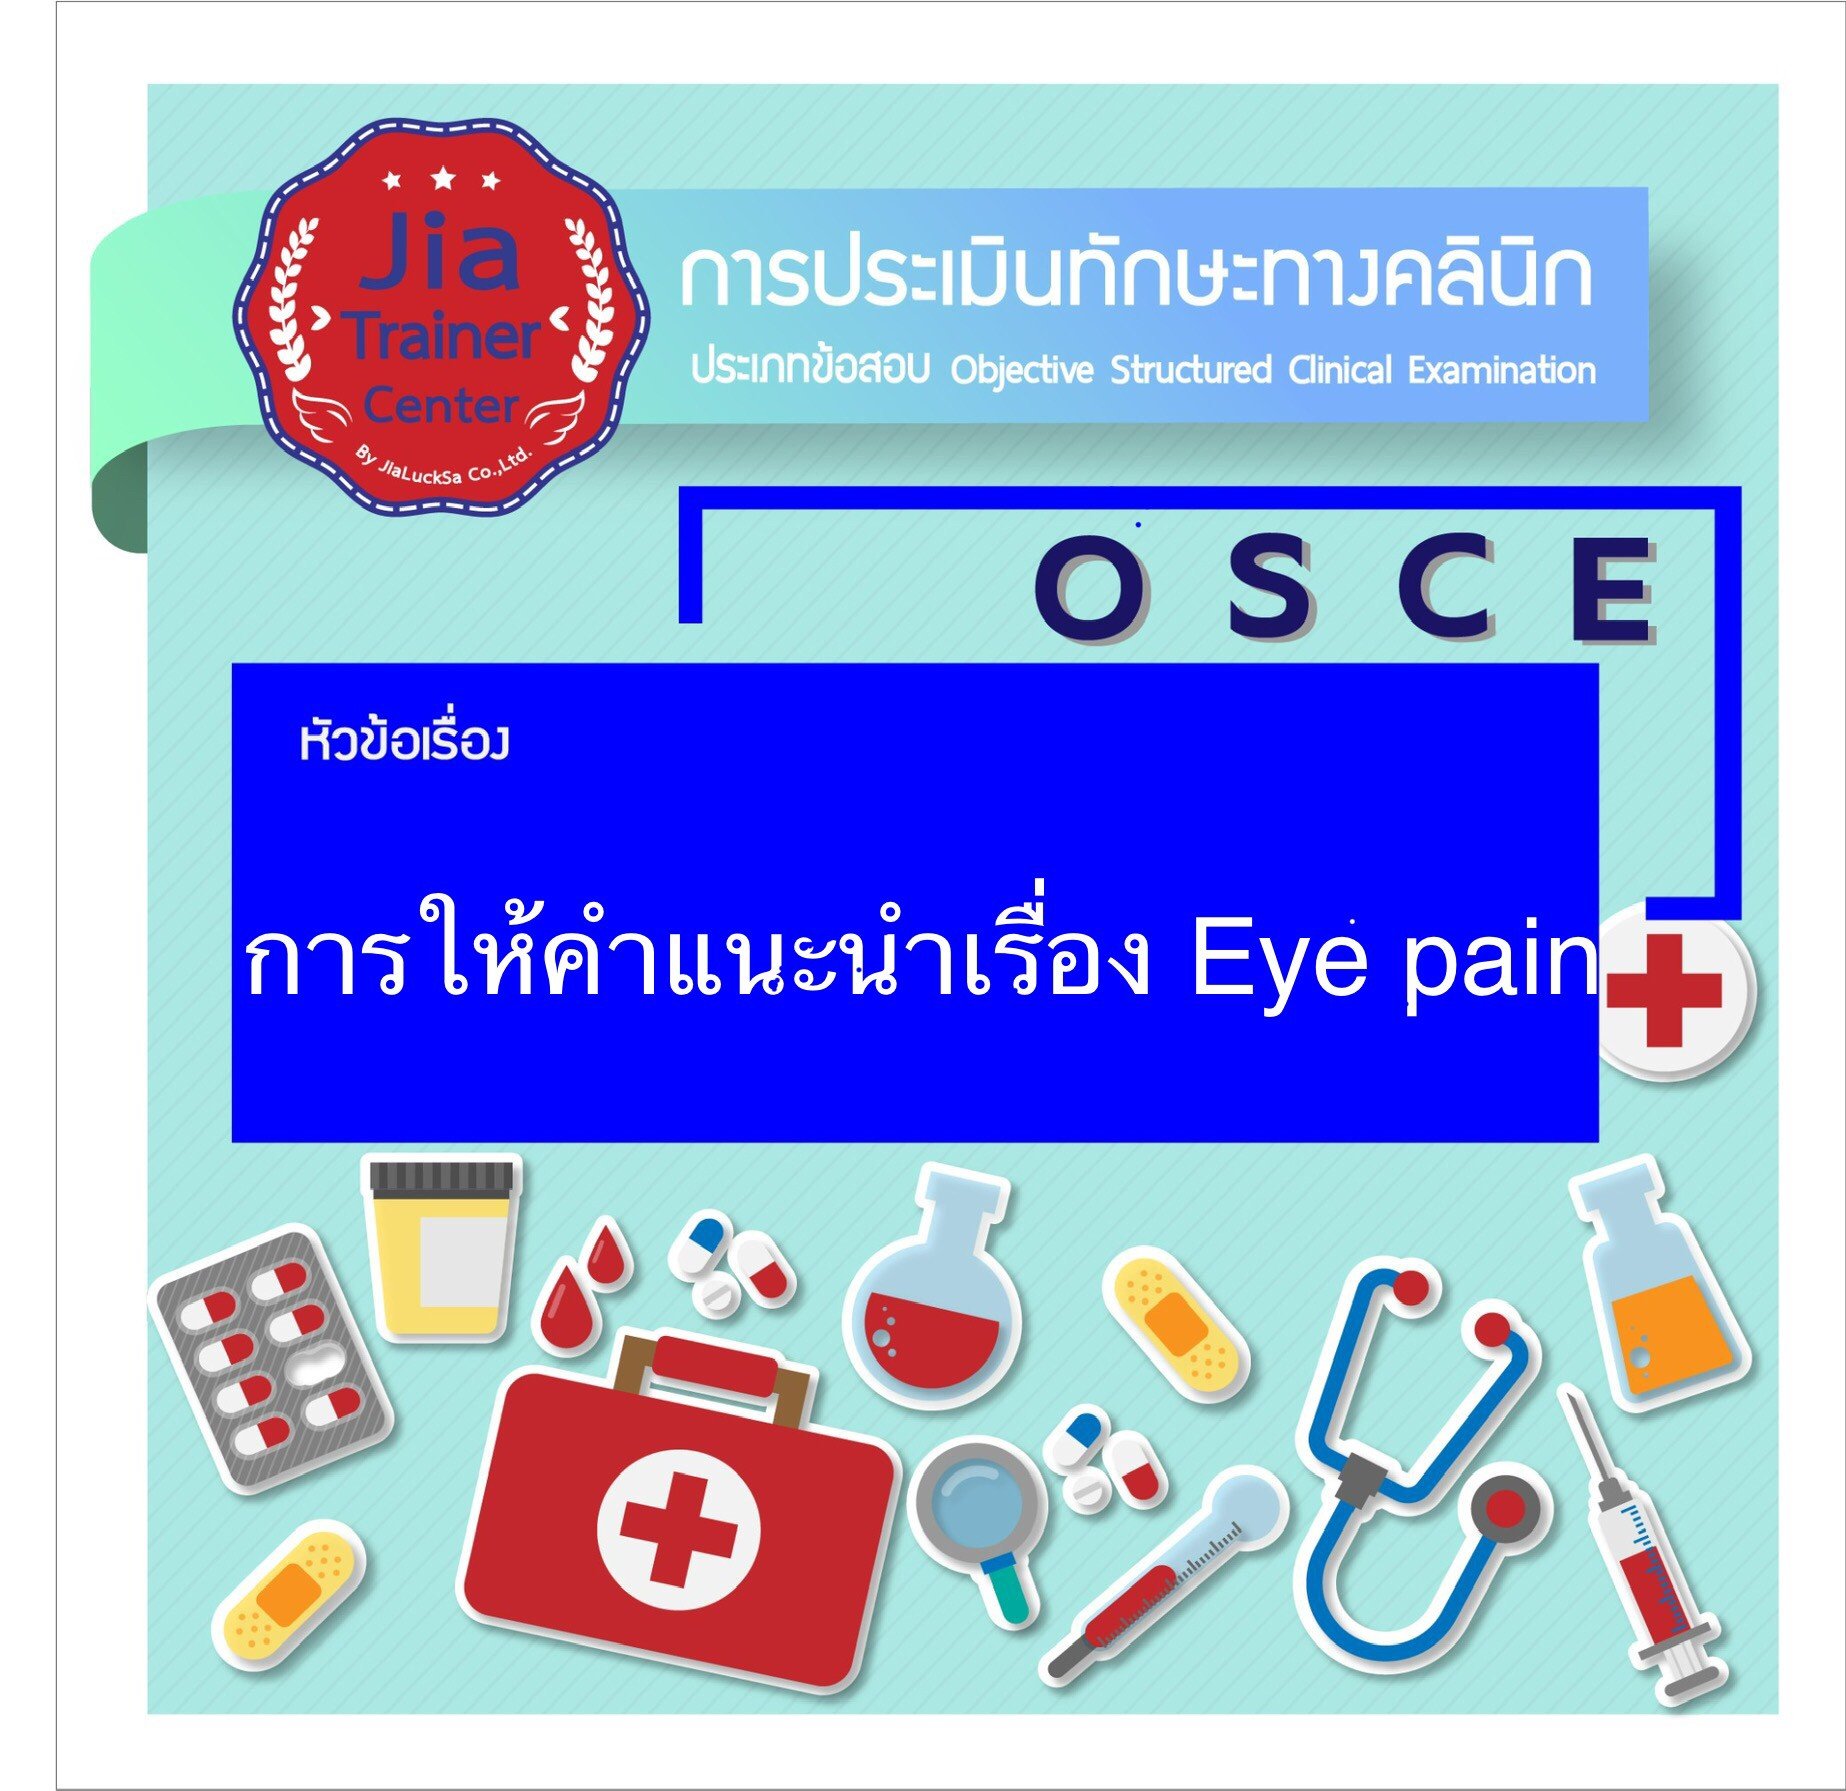 Osce-Giving advice on Eye Pain